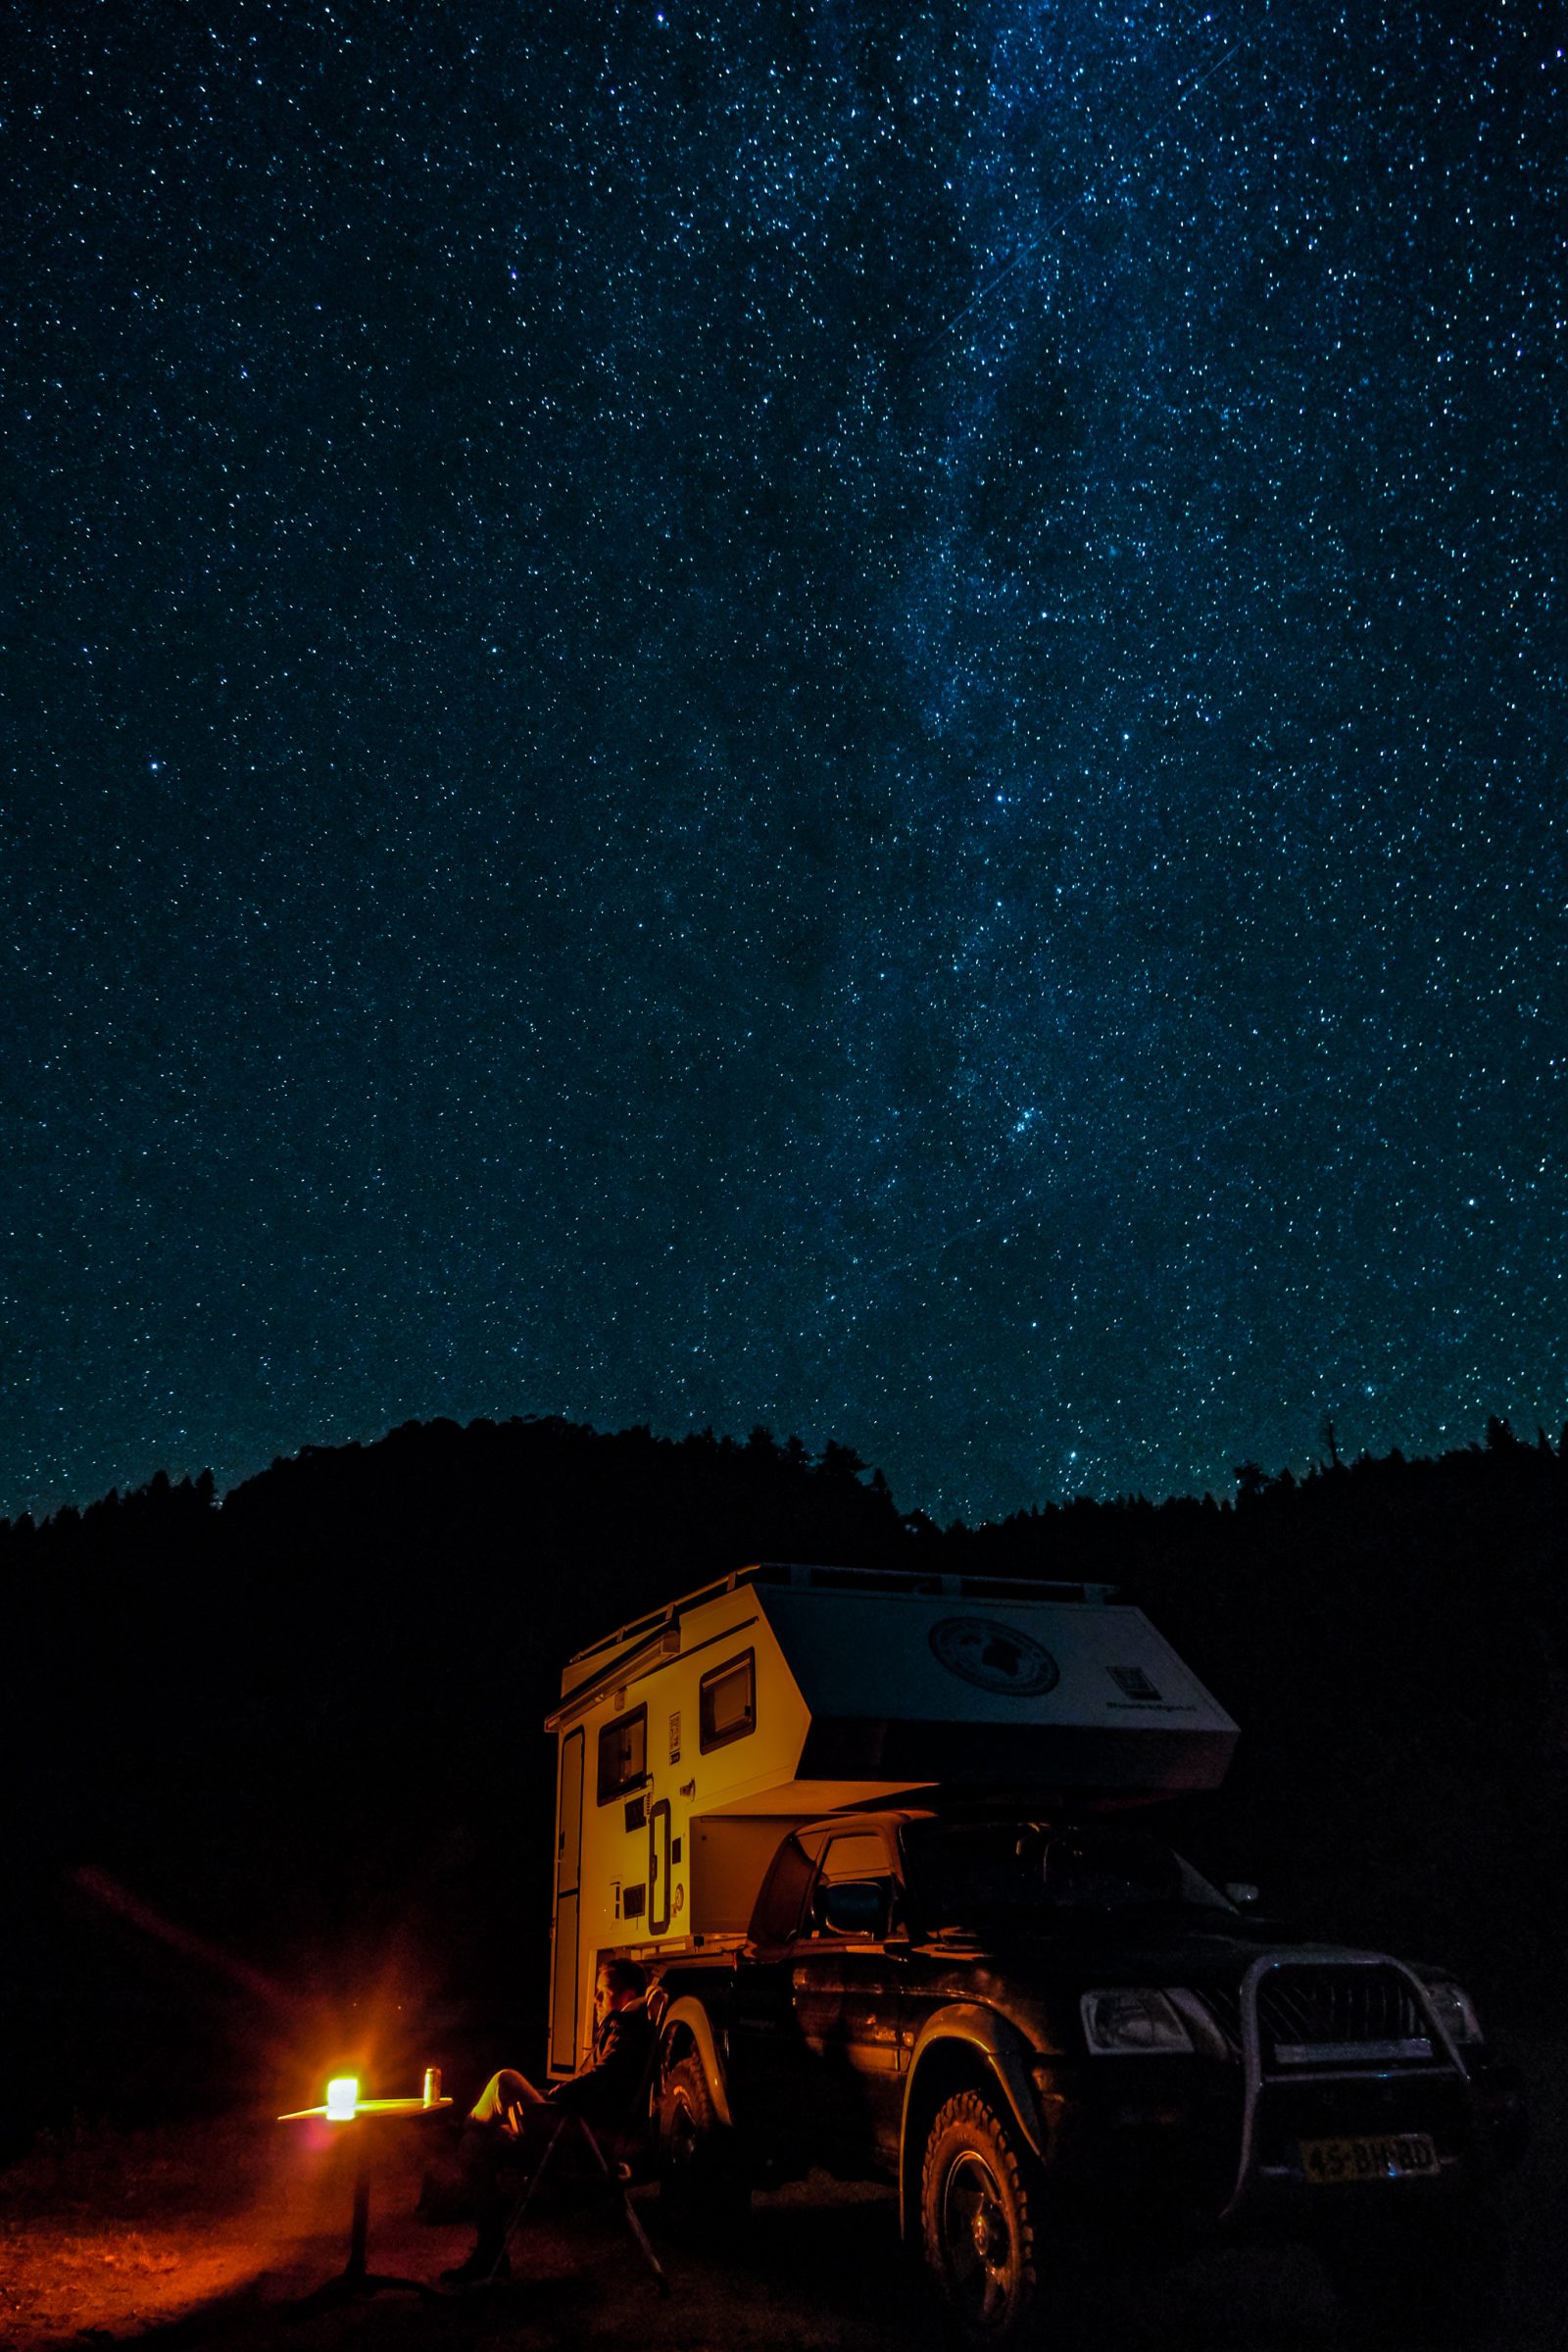 Chris, de Wereldreizigers.nl camping-car et étoiles en arrière-plan | Devonte Lookout, Californie